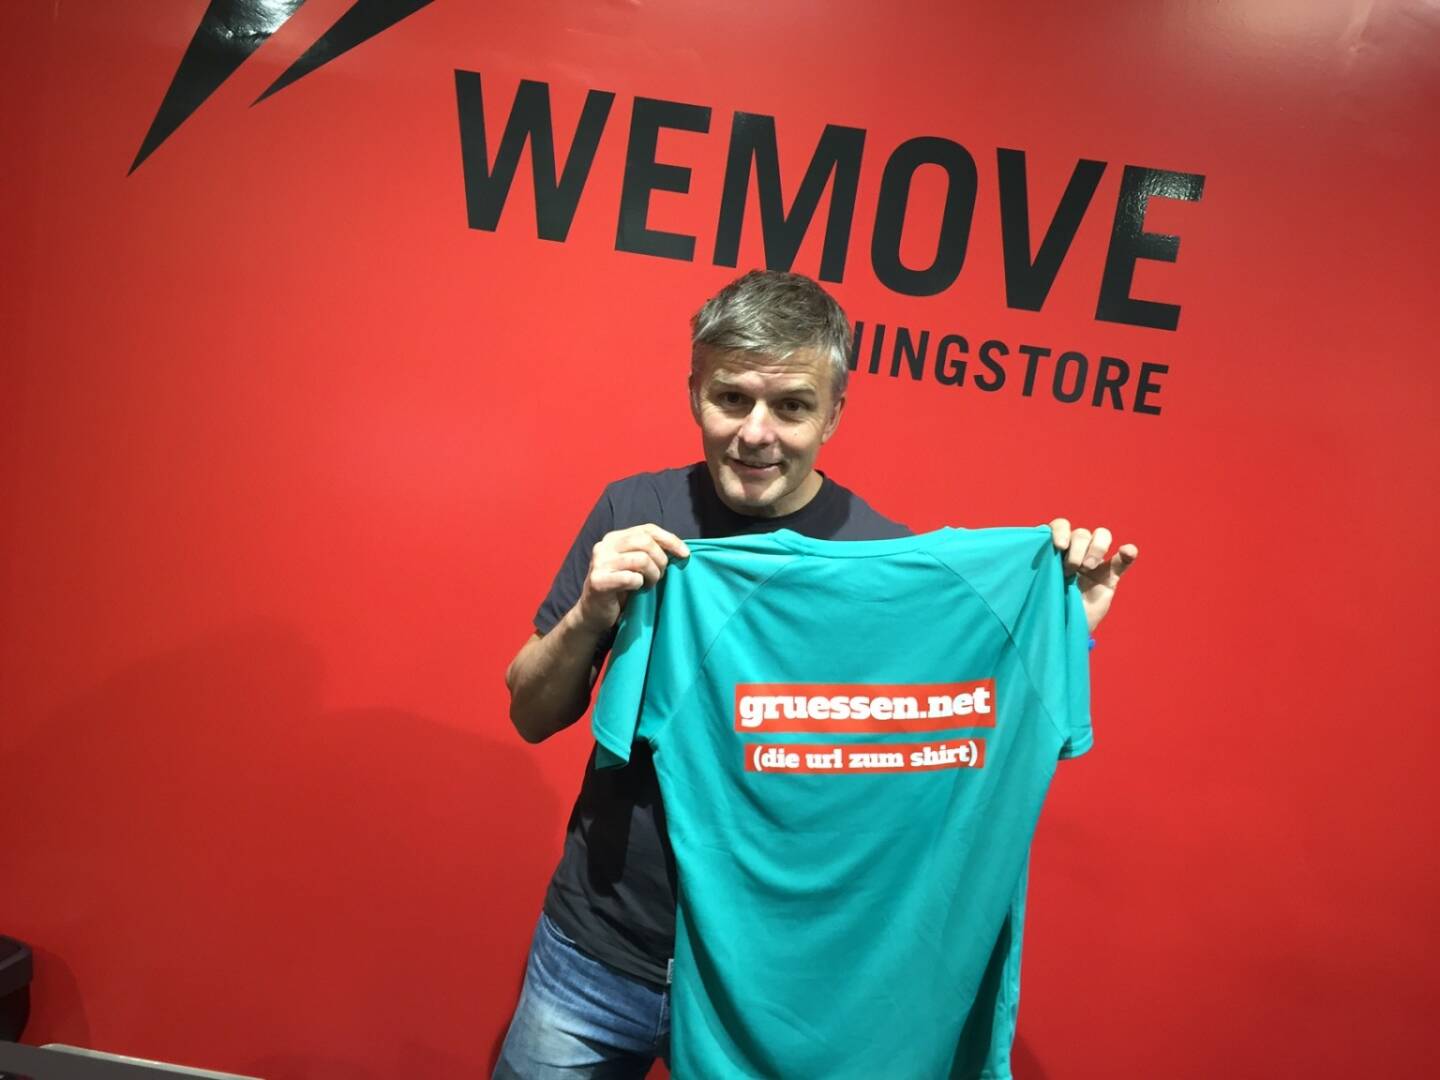 Michael Wernbacher WeMove Runningstore mit dem Shirt von www.gruessen.net . In Kürze wird es das Shirt im WeMove Store auf der Mall in Wien Landstrasse zu 14 Euro in drei Grössen (S, M, L) zu kaufen geben